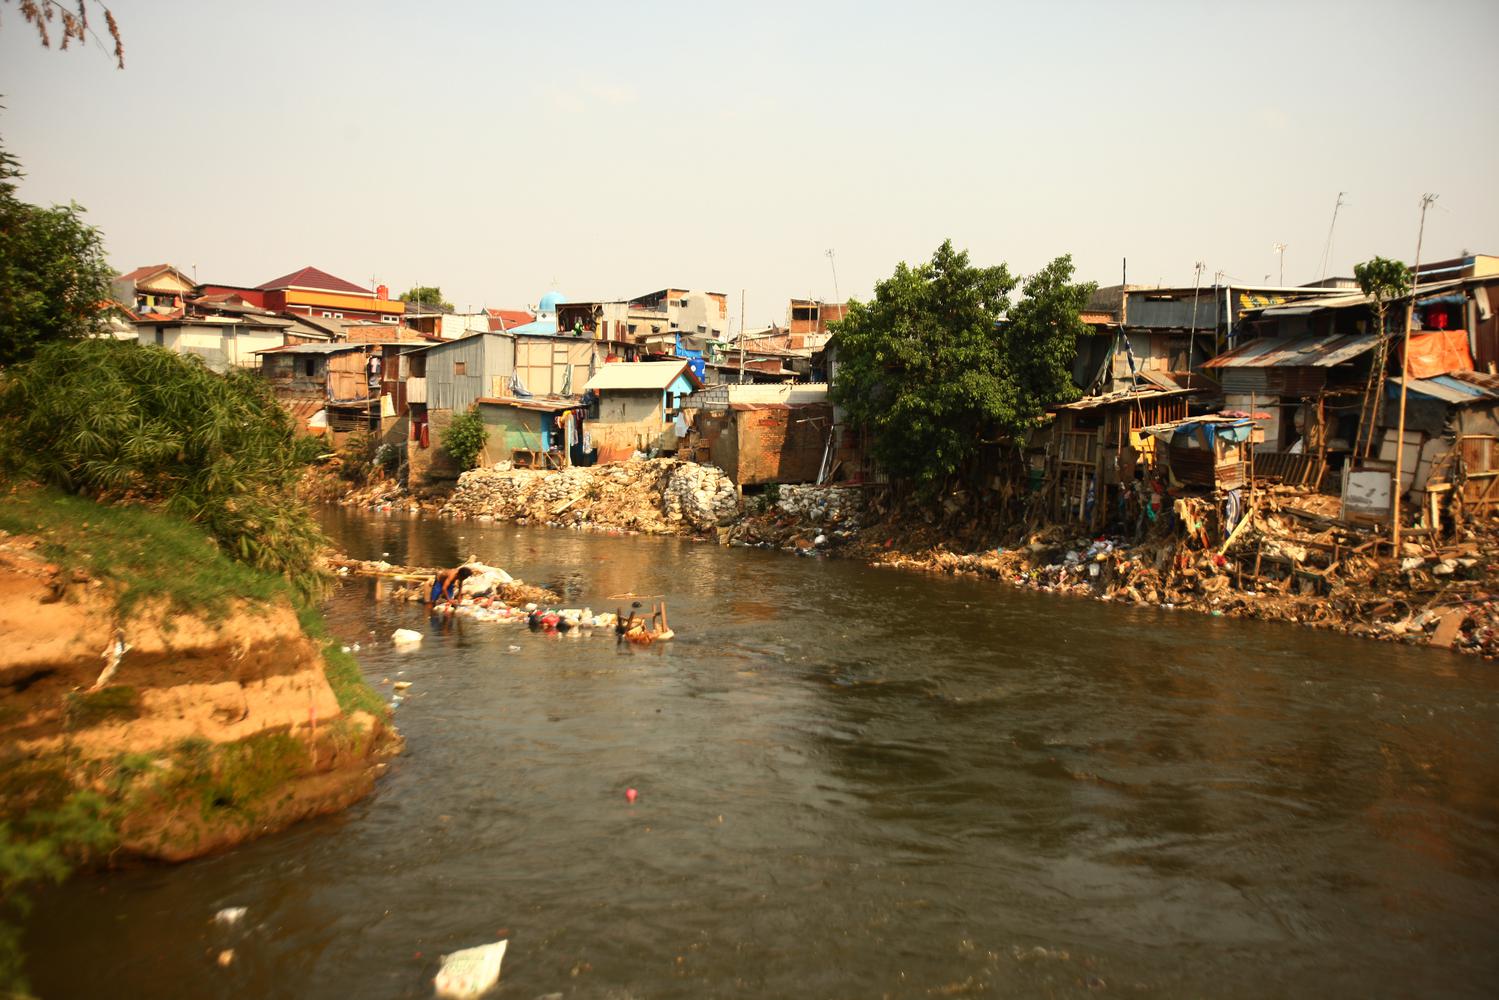 Suasana deretan rumah di bantaran Sungai Ciliwung di Jakarta, Kamis (24/10/2019). Presiden Joko Widodo menargetkan angka kemiskinan bisa mendekati nol persen pada tahun 2045 dan telah menyiapkan lima kebijakan prioritas untuk mewujudkannya.